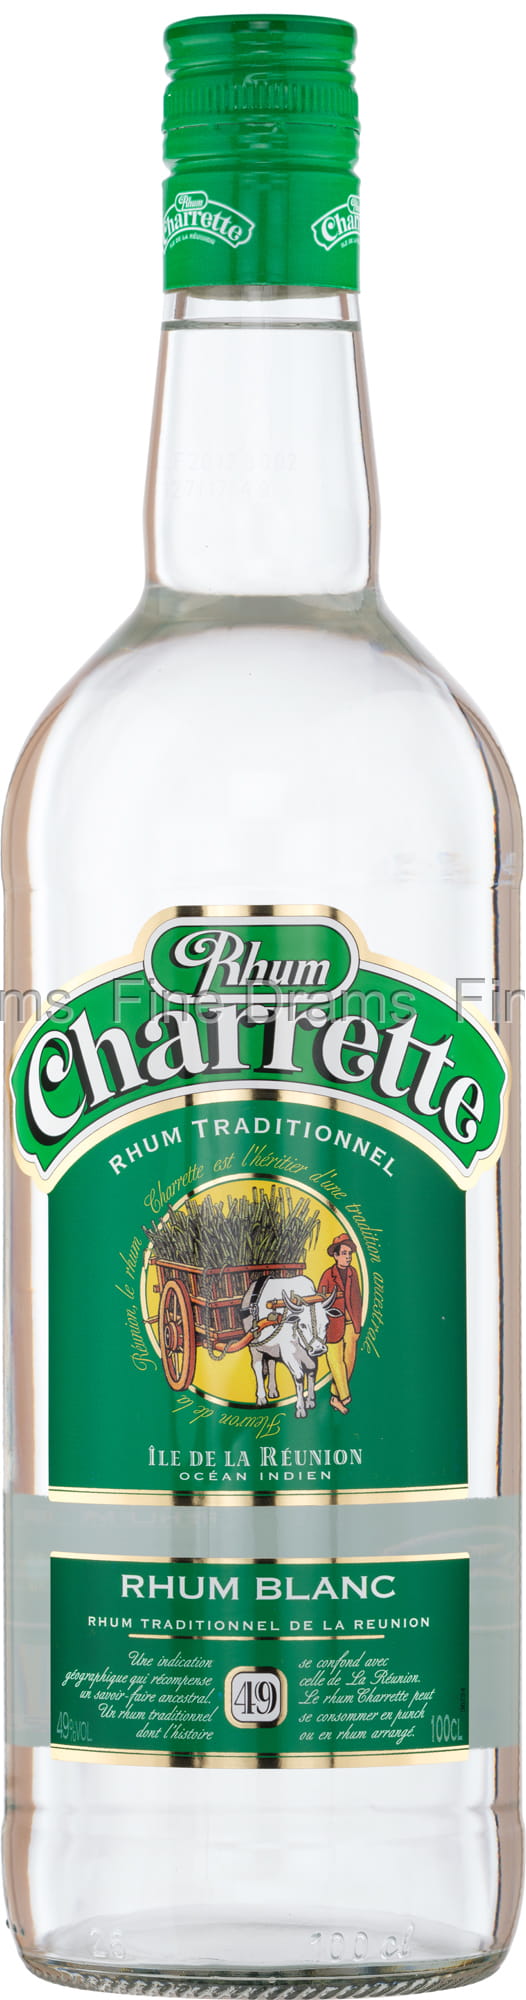 Lot de 3 bouteilles de rhum Charrette - Blanc - Les Rhums du Monde